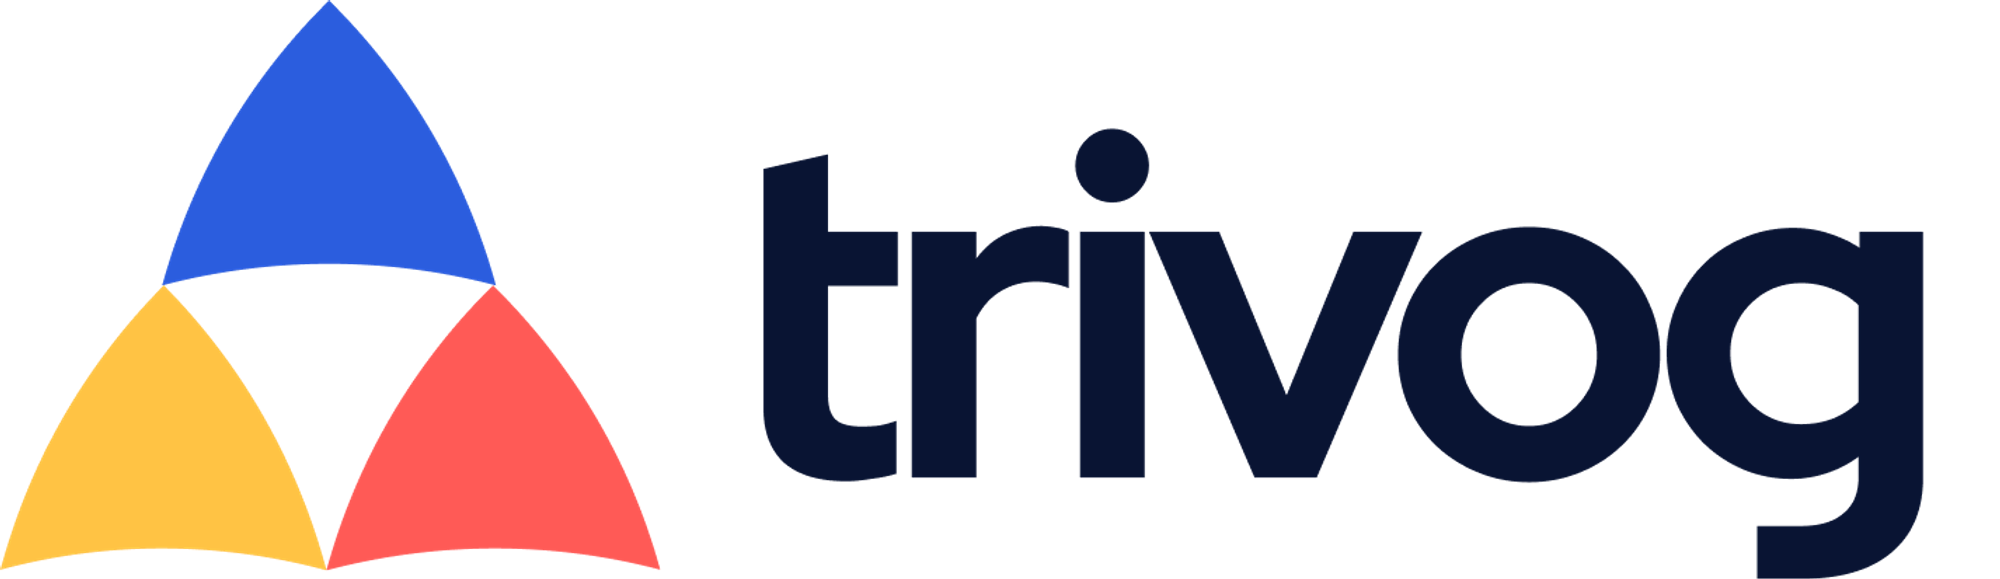 Modern logo design for trivog.com